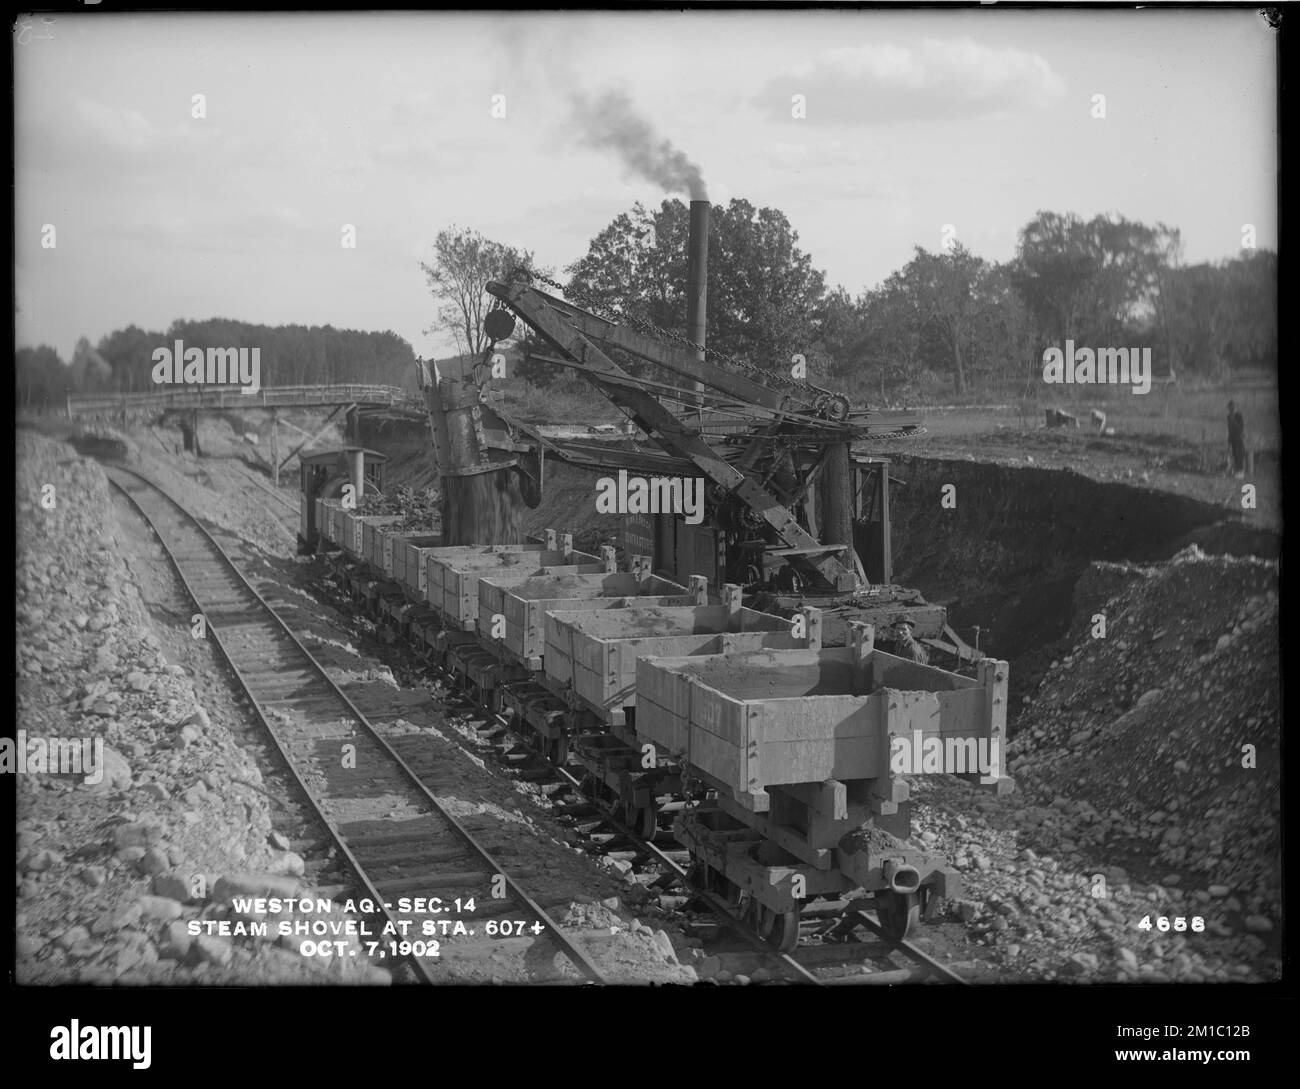 Weston Aquädukt, Sektion 14, Dampfschaufel, Station 607+, Weston, Messe, 7. Oktober 1902, Wasserwerk, Aquädukte, Baustellen Stockfoto